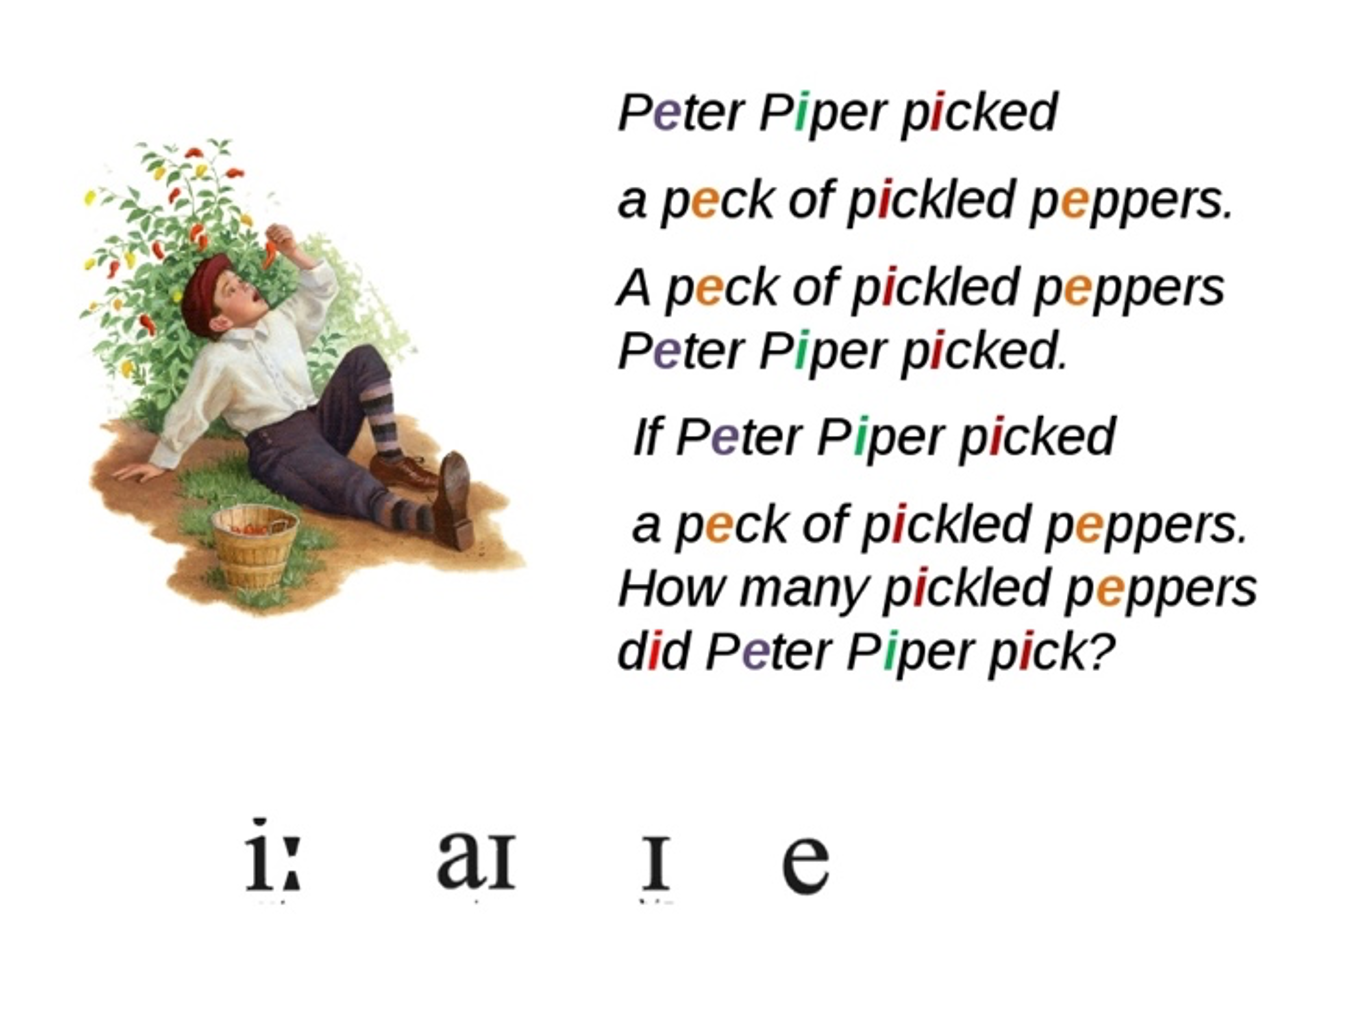 Скороговорки на английские звуки. Peter Piper picked a Peck of Pickled Peppers скороговорка. Питер Пайпер скороговорка на английском. Скороговорка на английском Peter Piper. Скороговорки на английском.